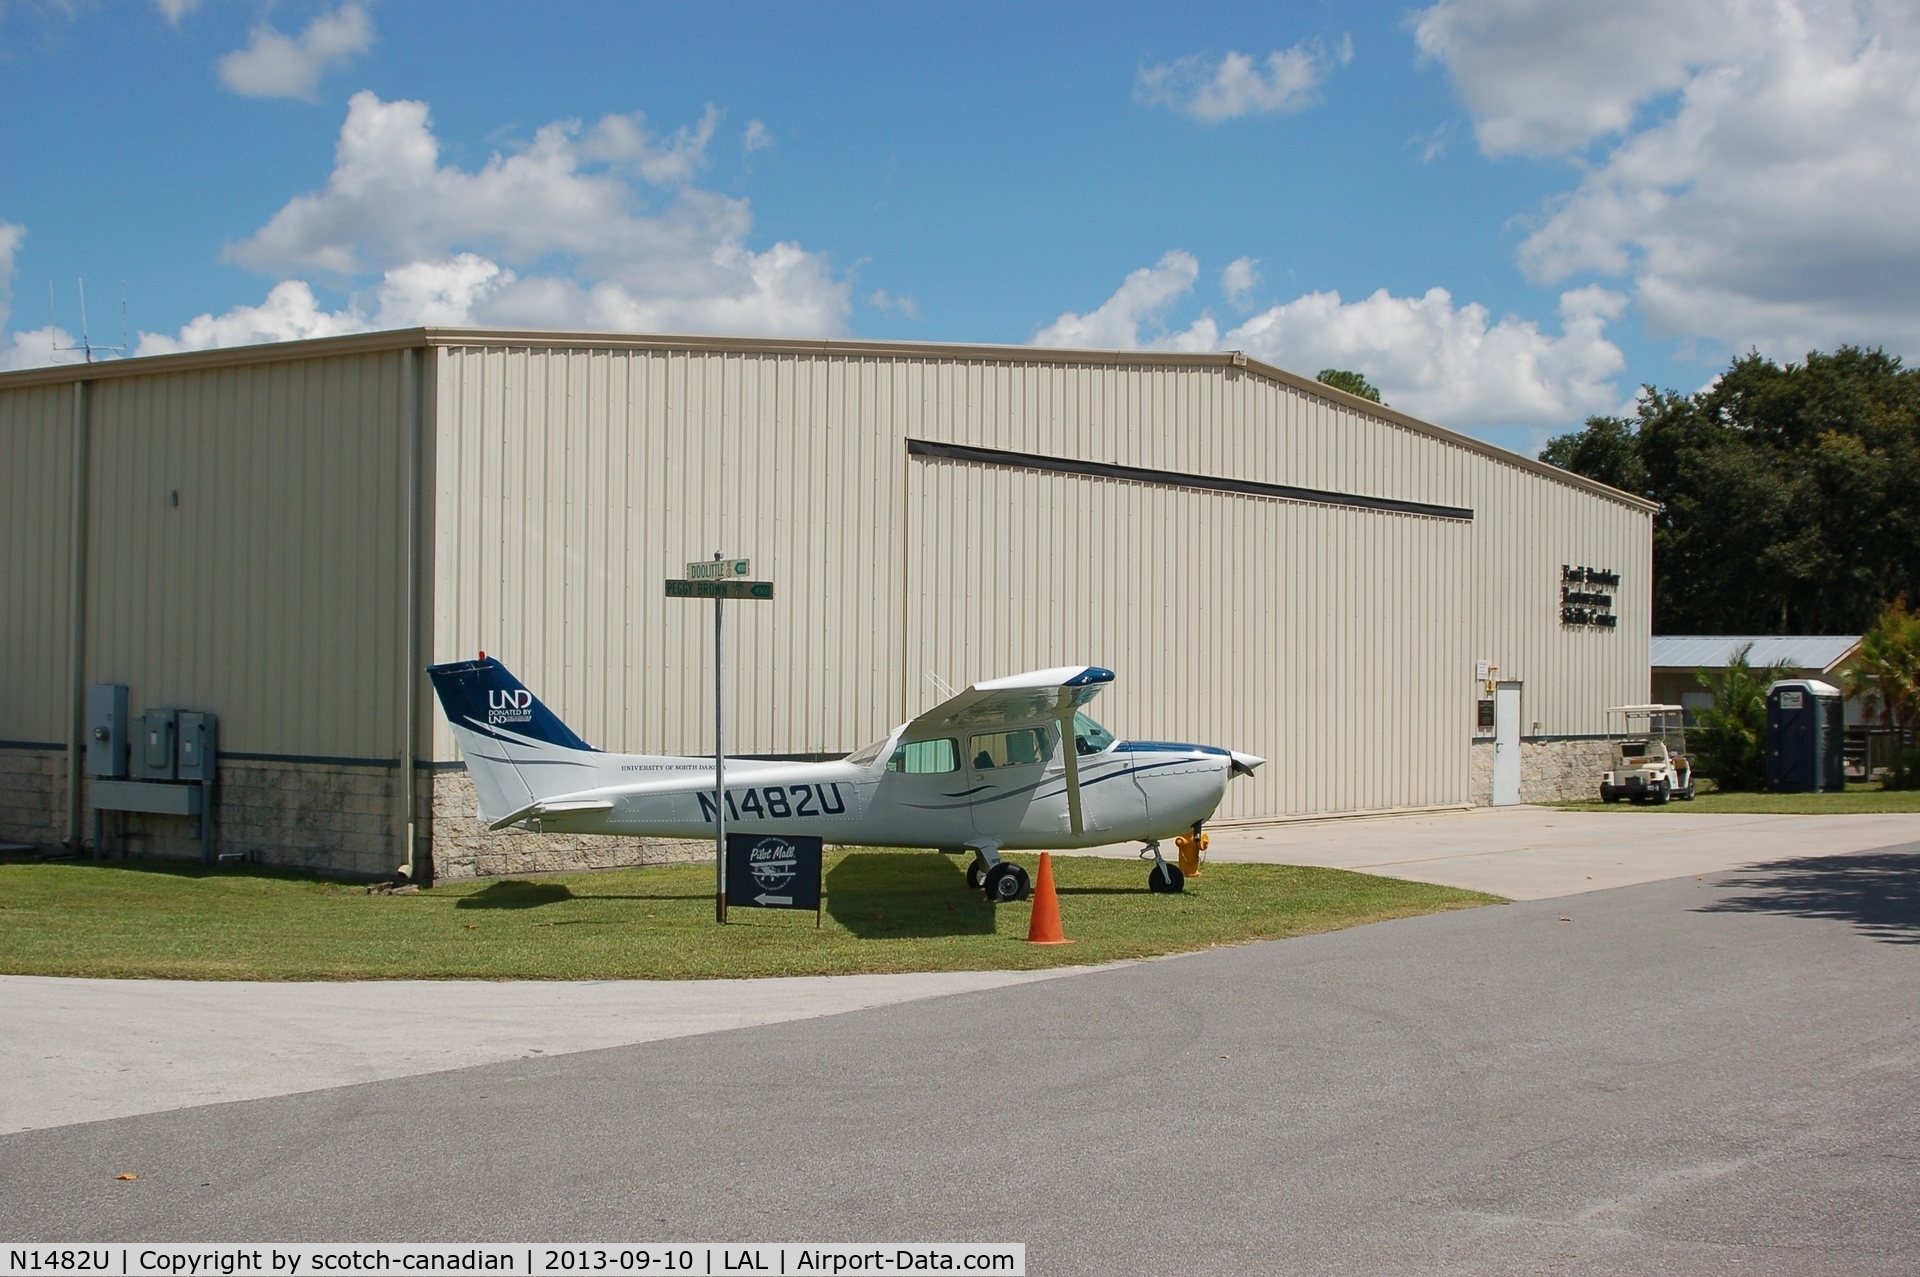 N1482U, 1976 Cessna 172M C/N 17267149, 1976 Cessna 172M, N1482U at the Florida Air Museum, Lakeland Linder Regional Airport, Lakeland, FL